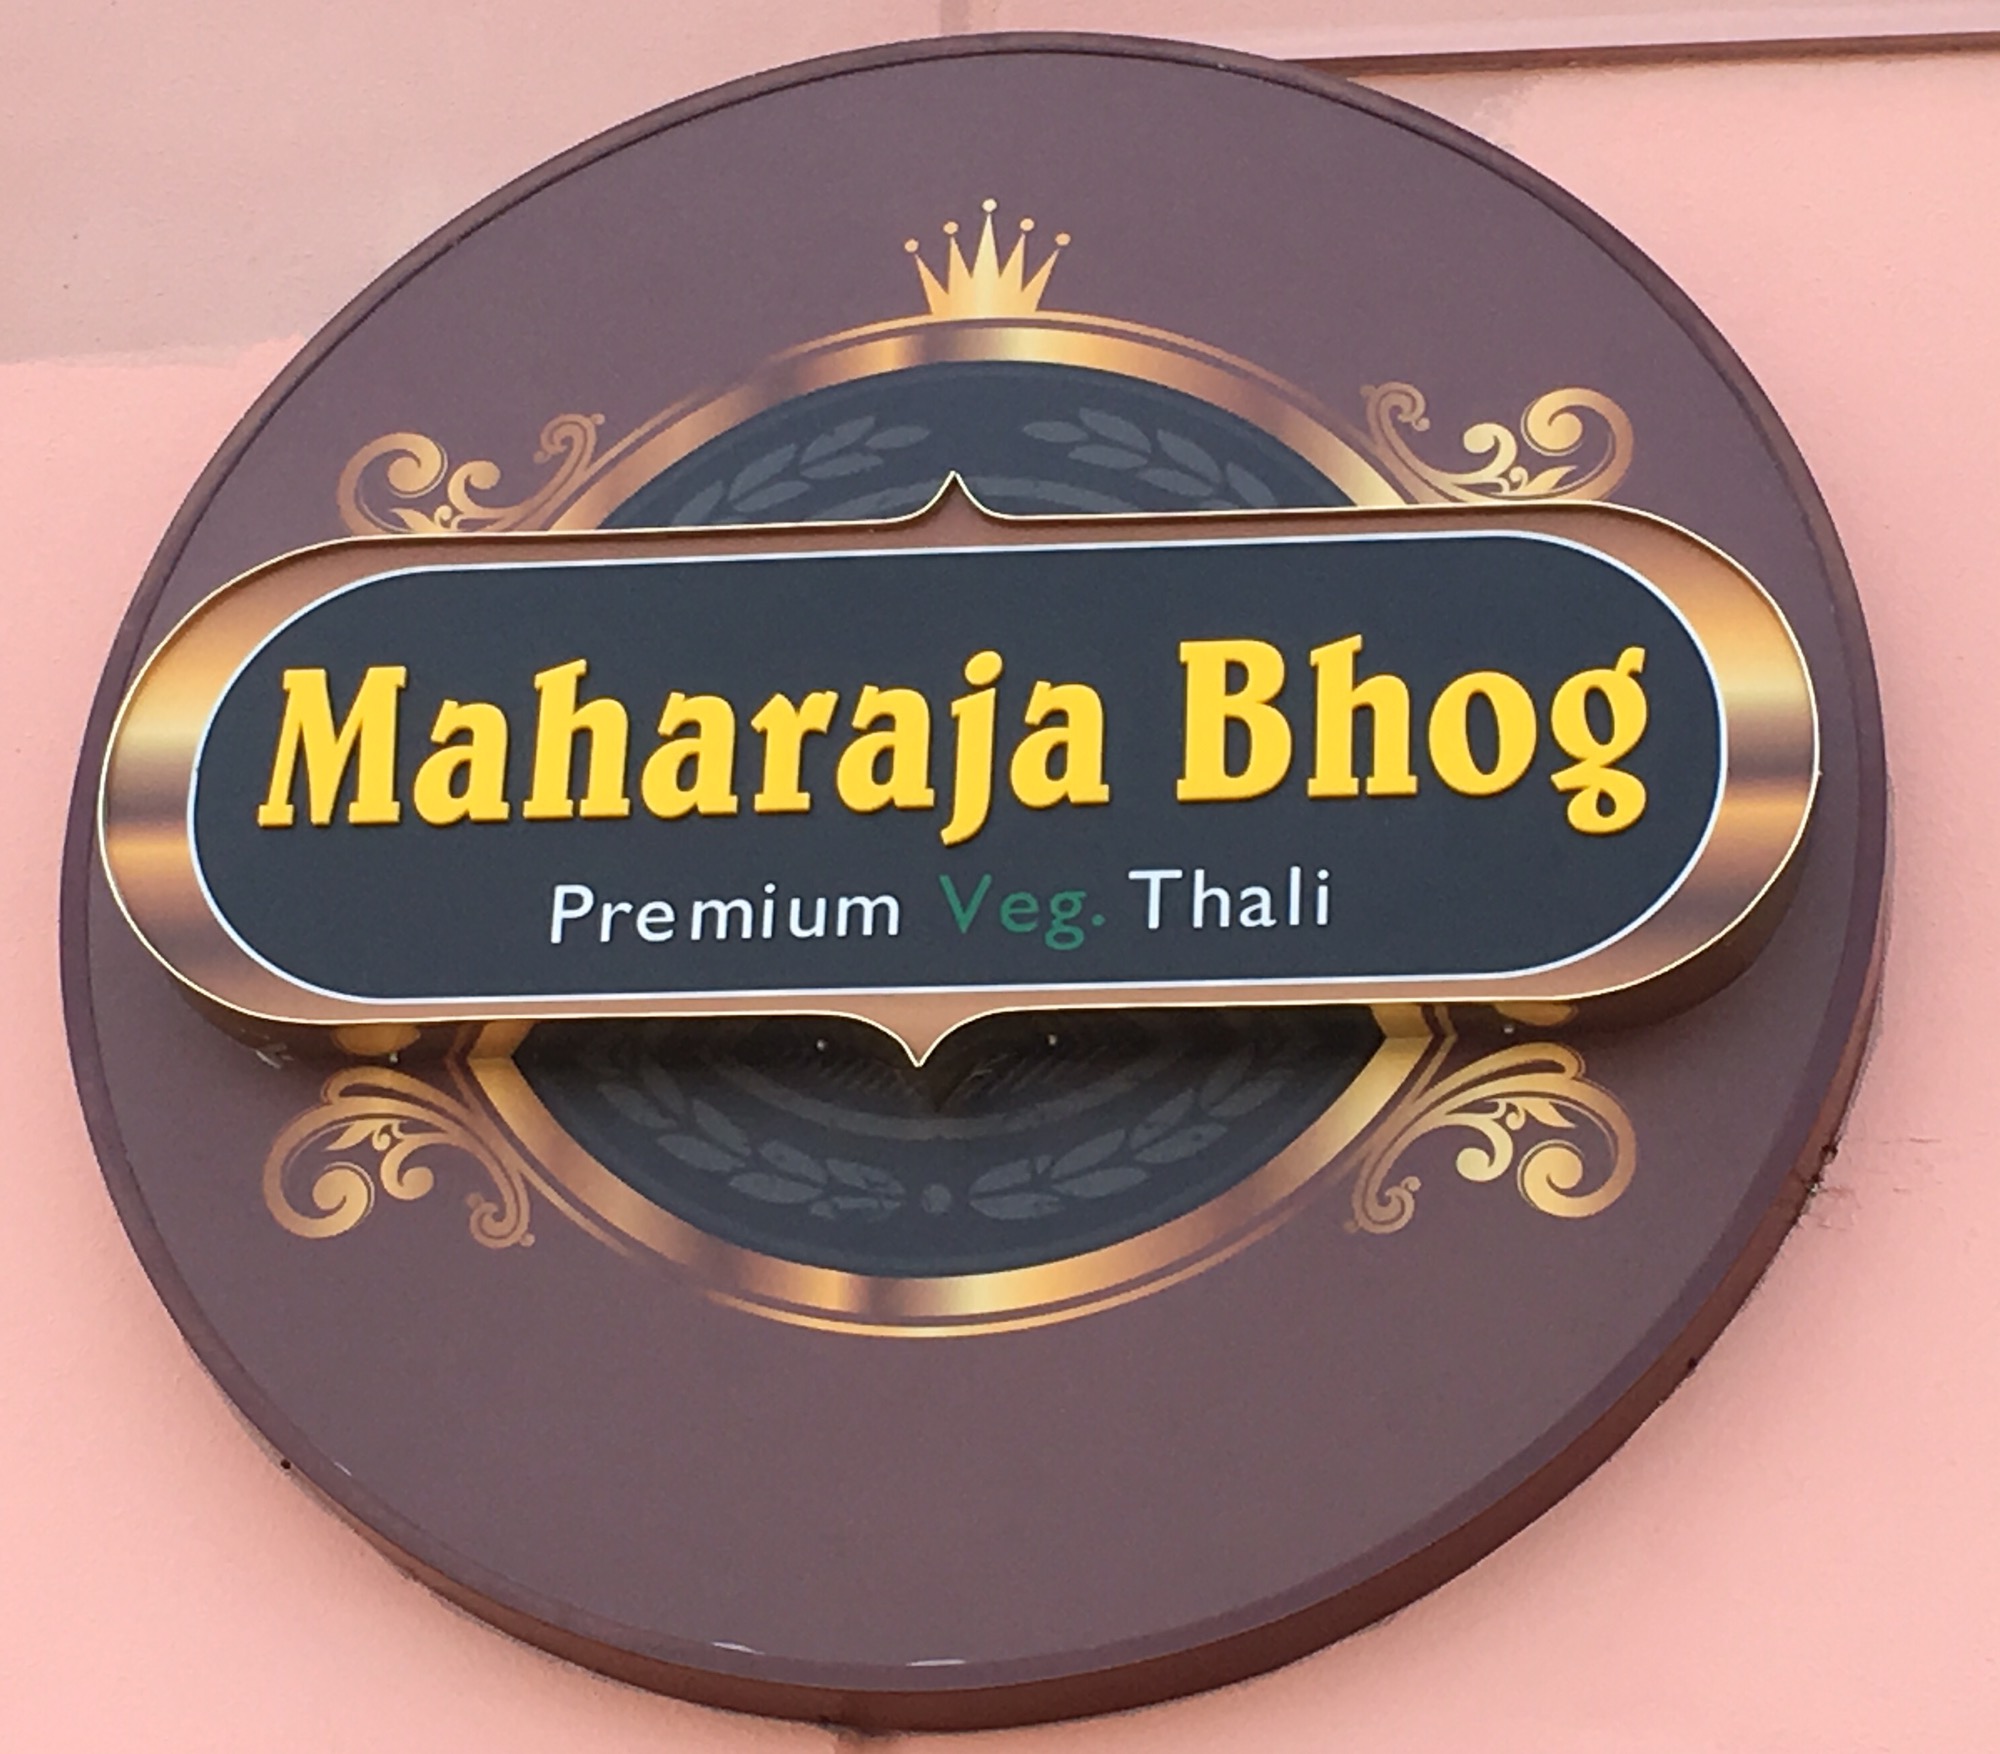 Maharaja Bhog Restaurant